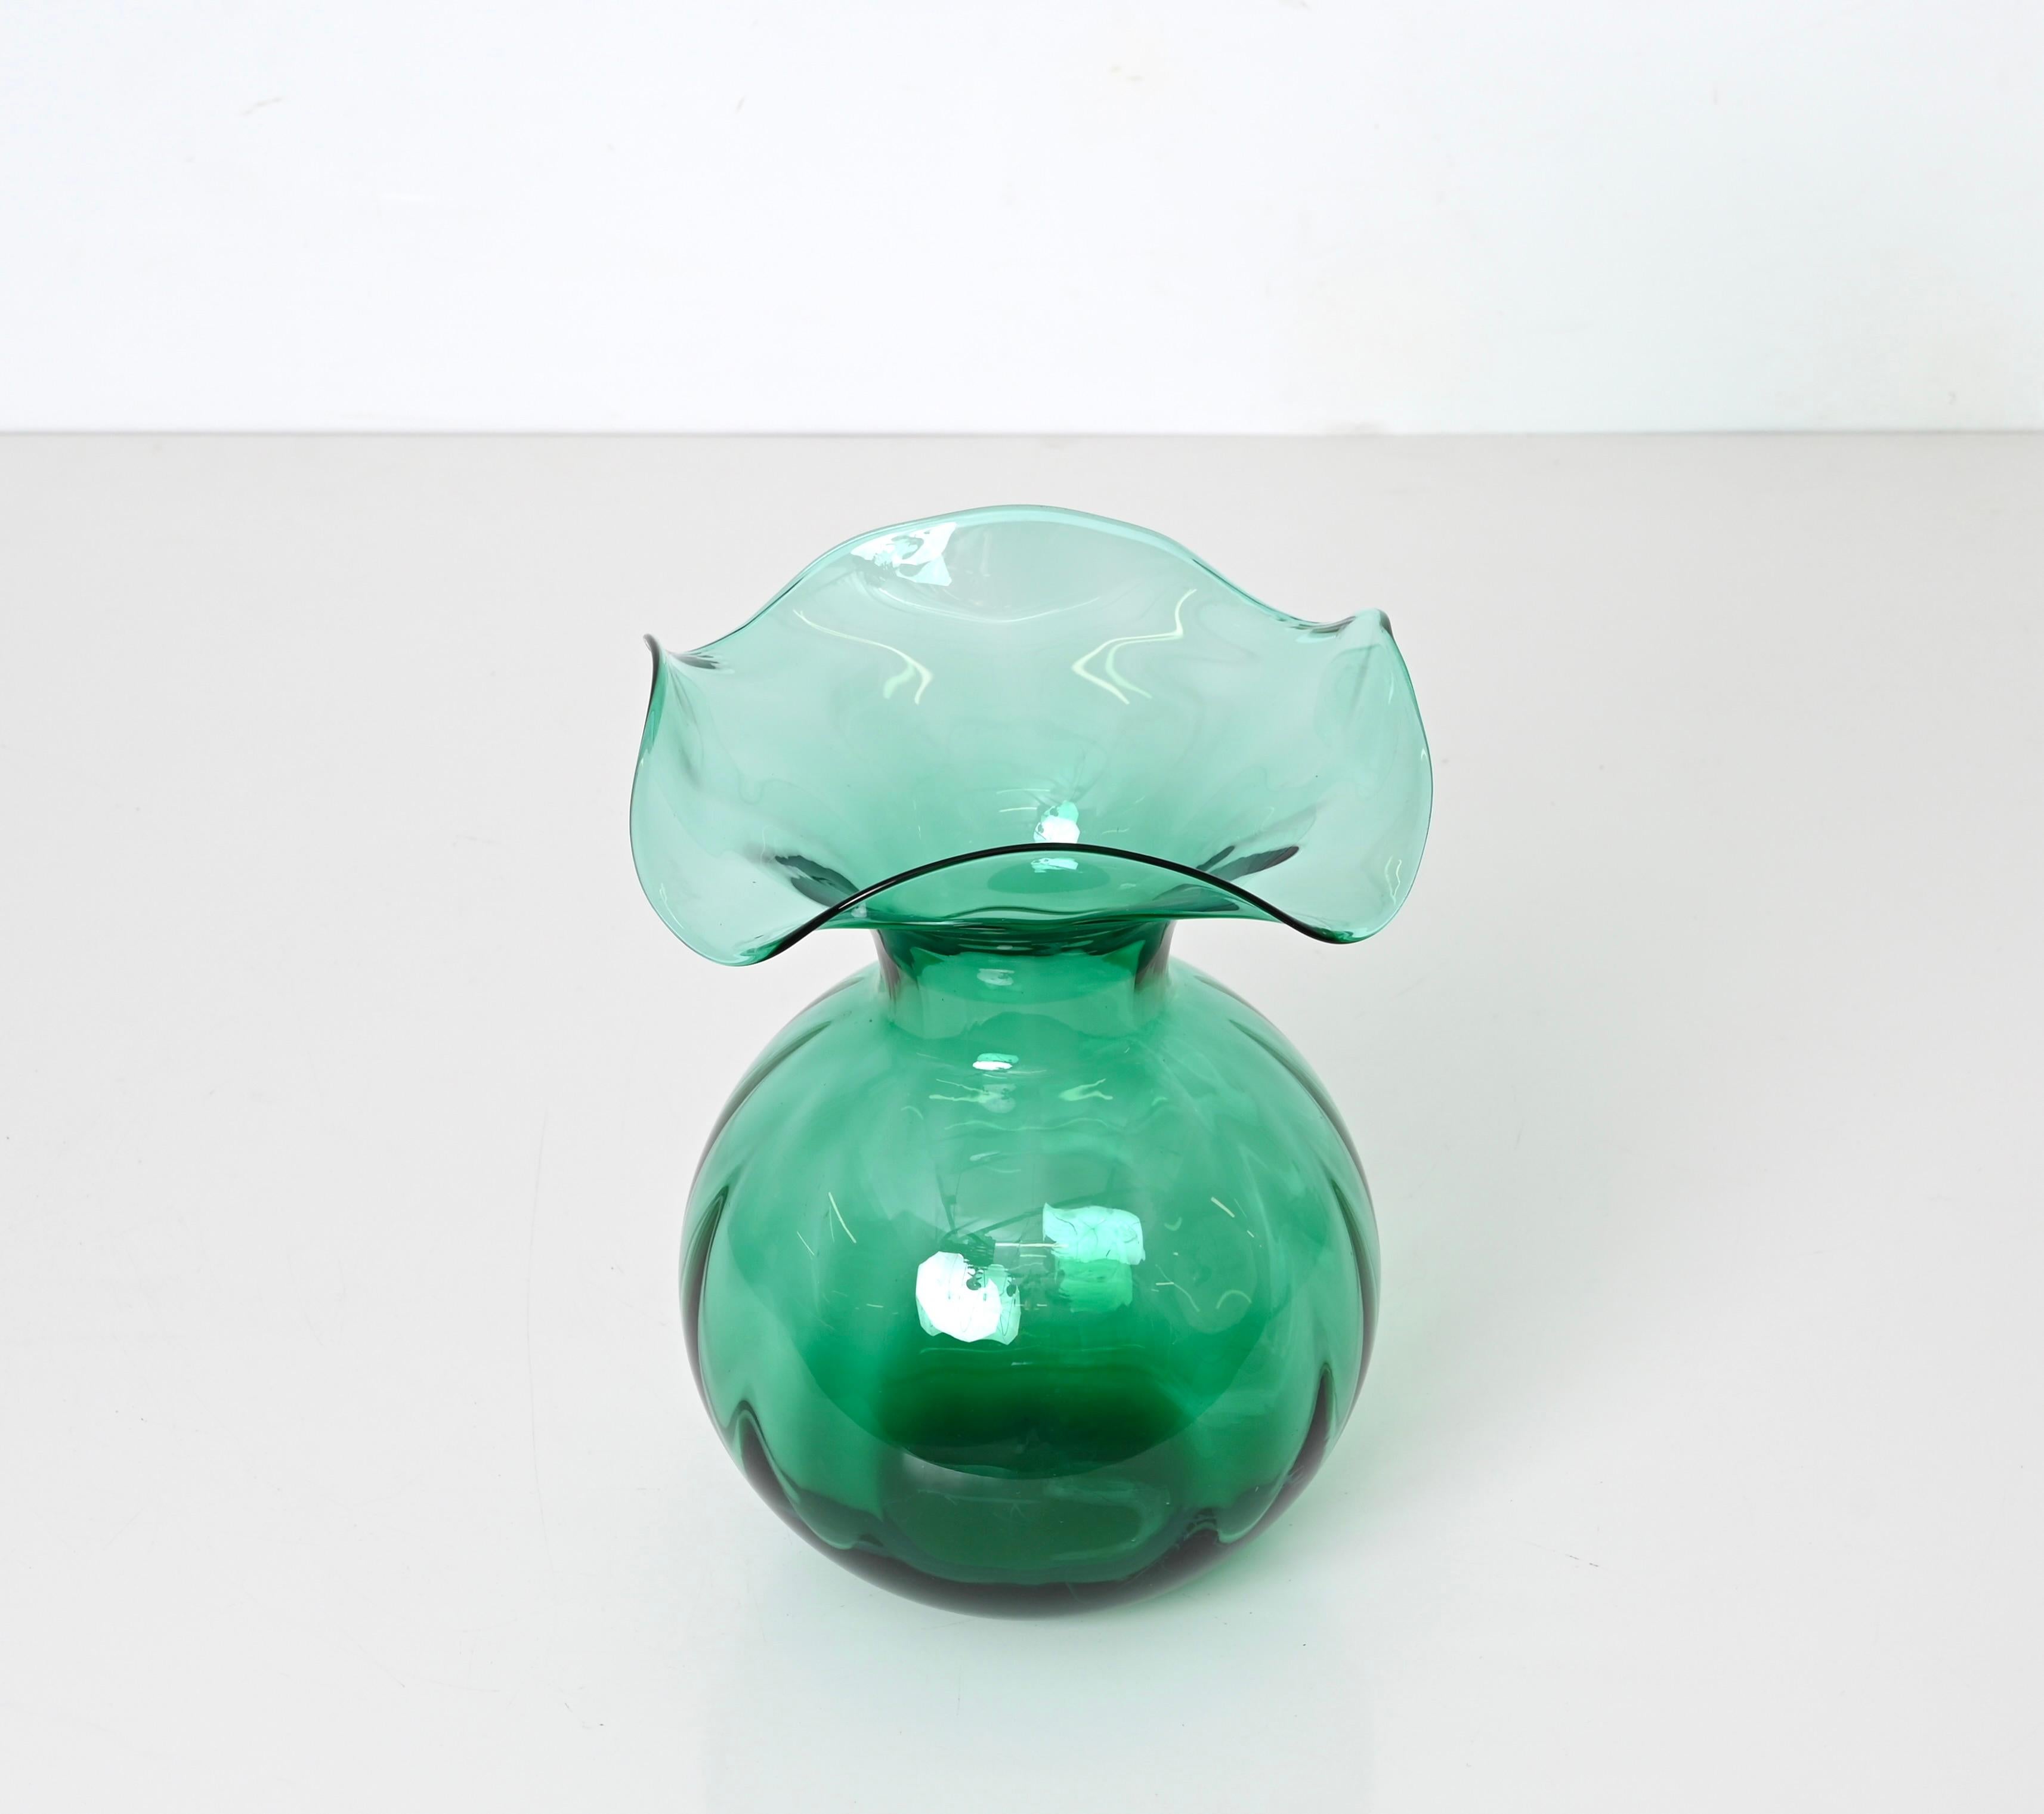 Erstaunliche grüne Glasvase aus der Mitte des Jahrhunderts. Dieses wunderbare Objekt wurde von Industria Vetraria Valdarnese (IVV) in Italien in den 1970er Jahren handgefertigt. 

Die geschwungenen Linien dieser Glasvase in Kombination mit dem